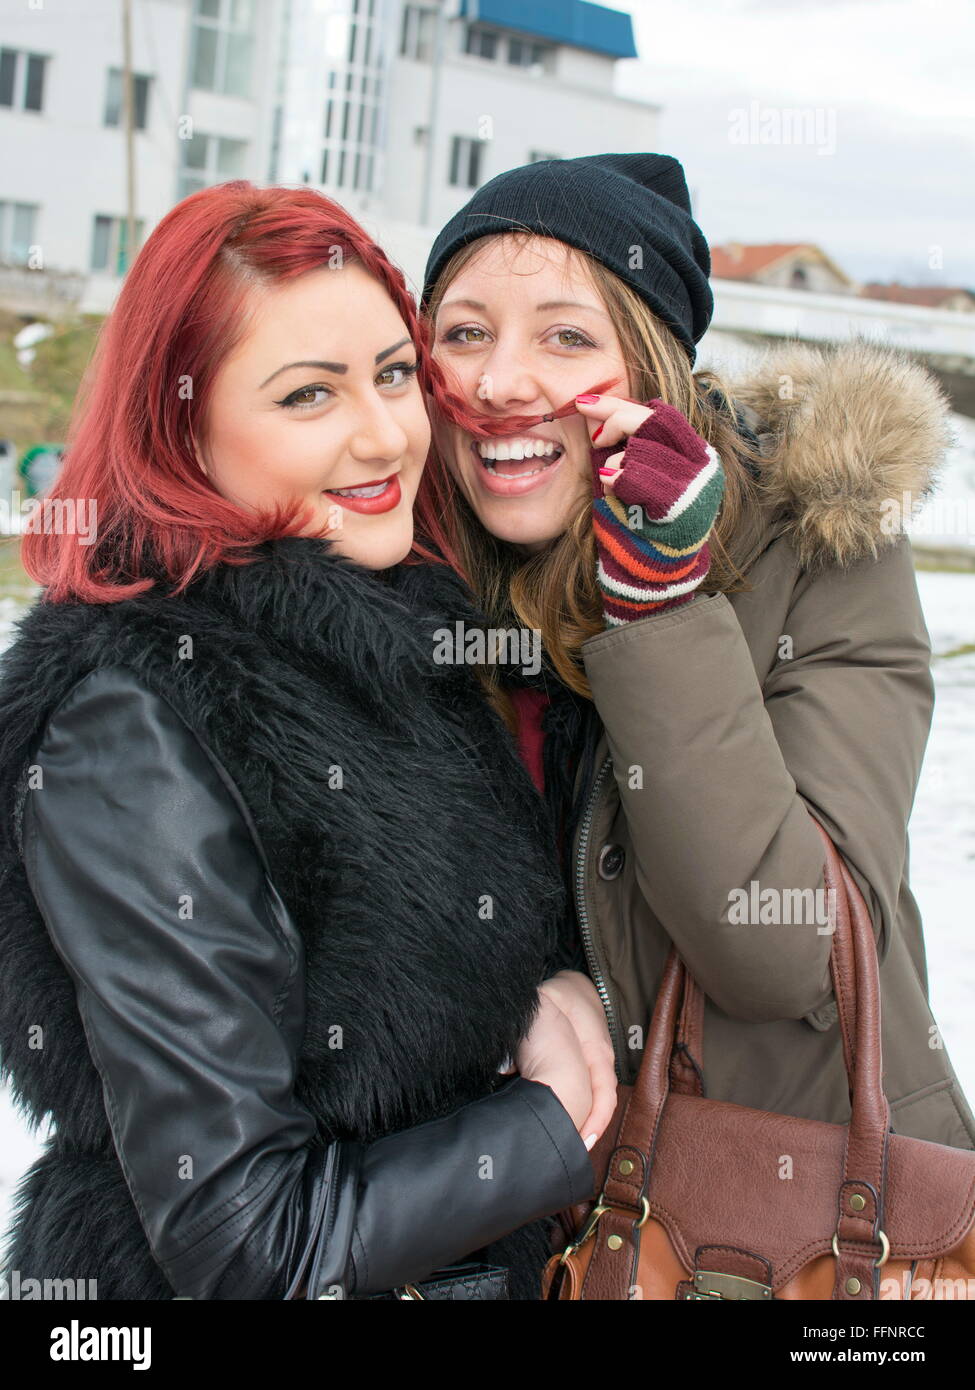 zwei Mädchen, die Spaß in das Winterwetter, ist ein Mädchen einen Schnurrbart mit ihren Haaren machen. Stockfoto